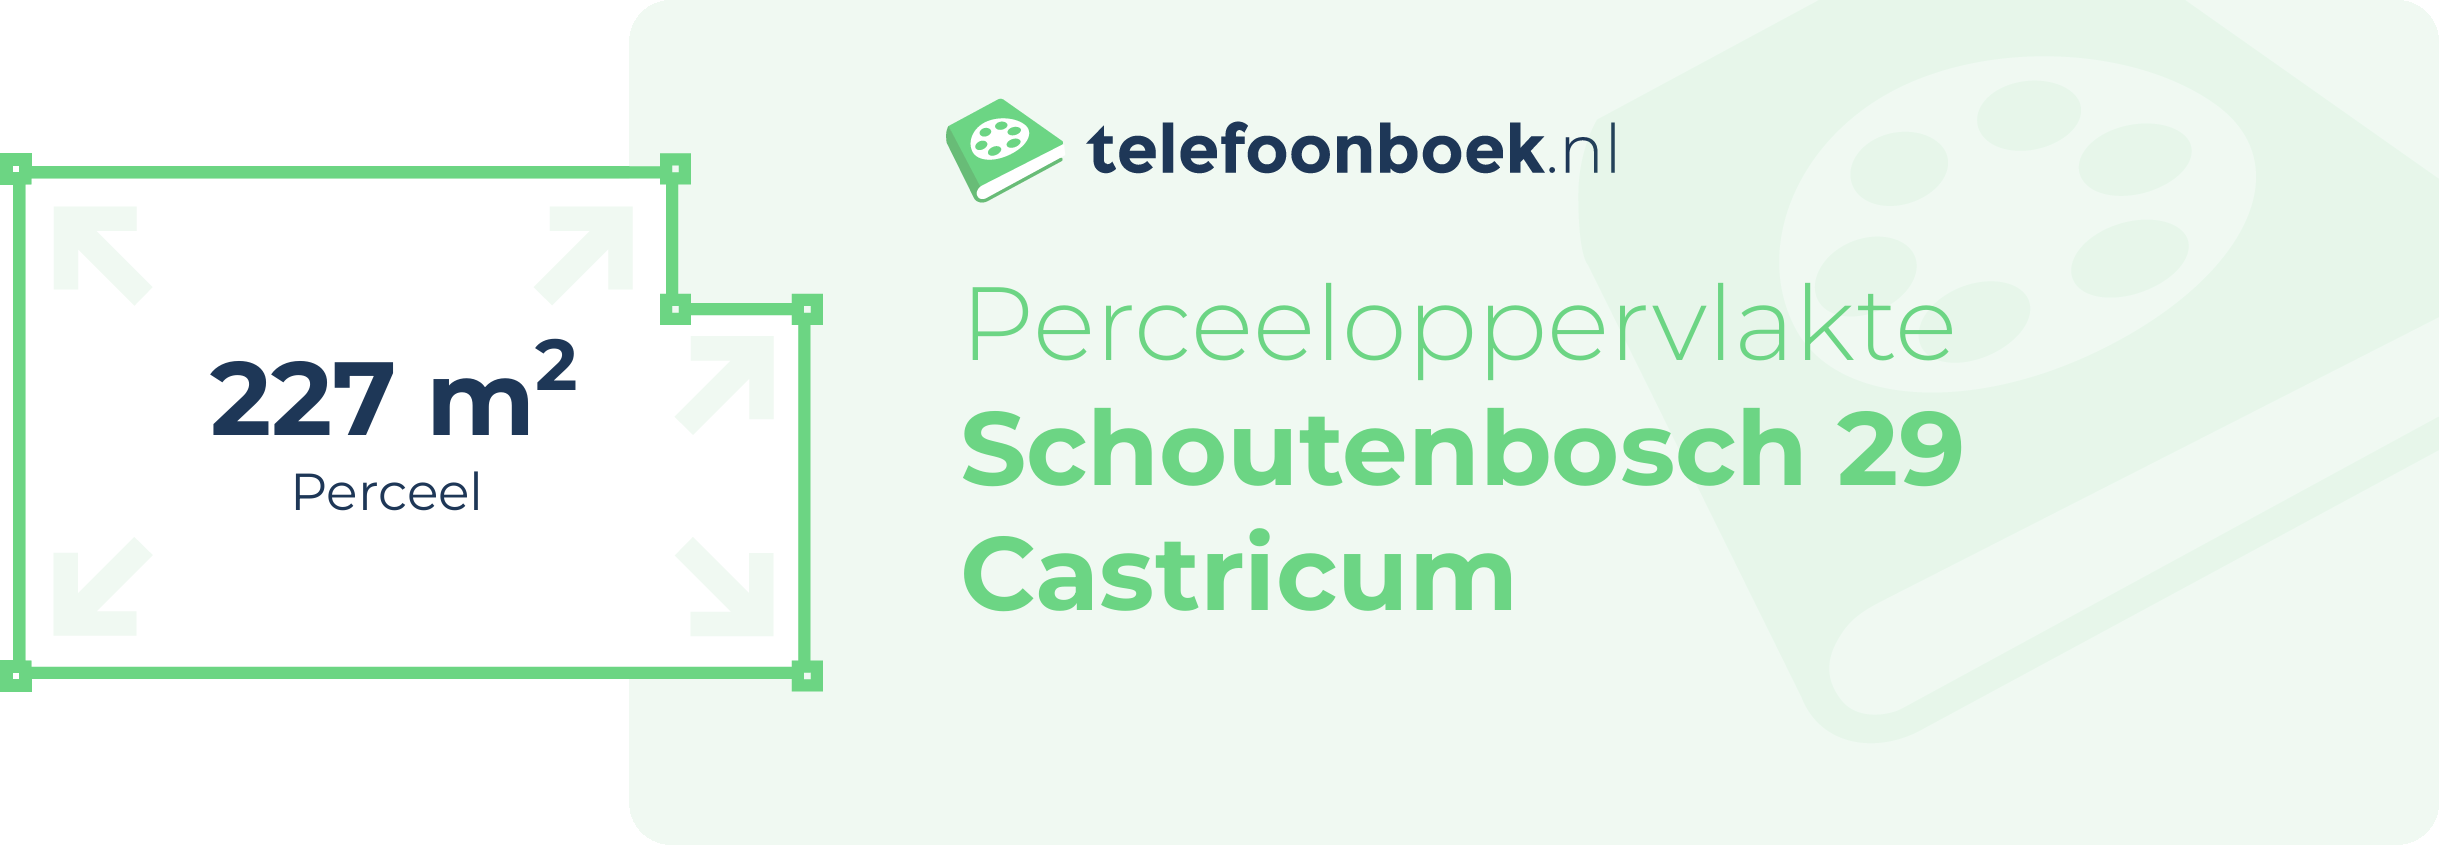 Perceeloppervlakte Schoutenbosch 29 Castricum